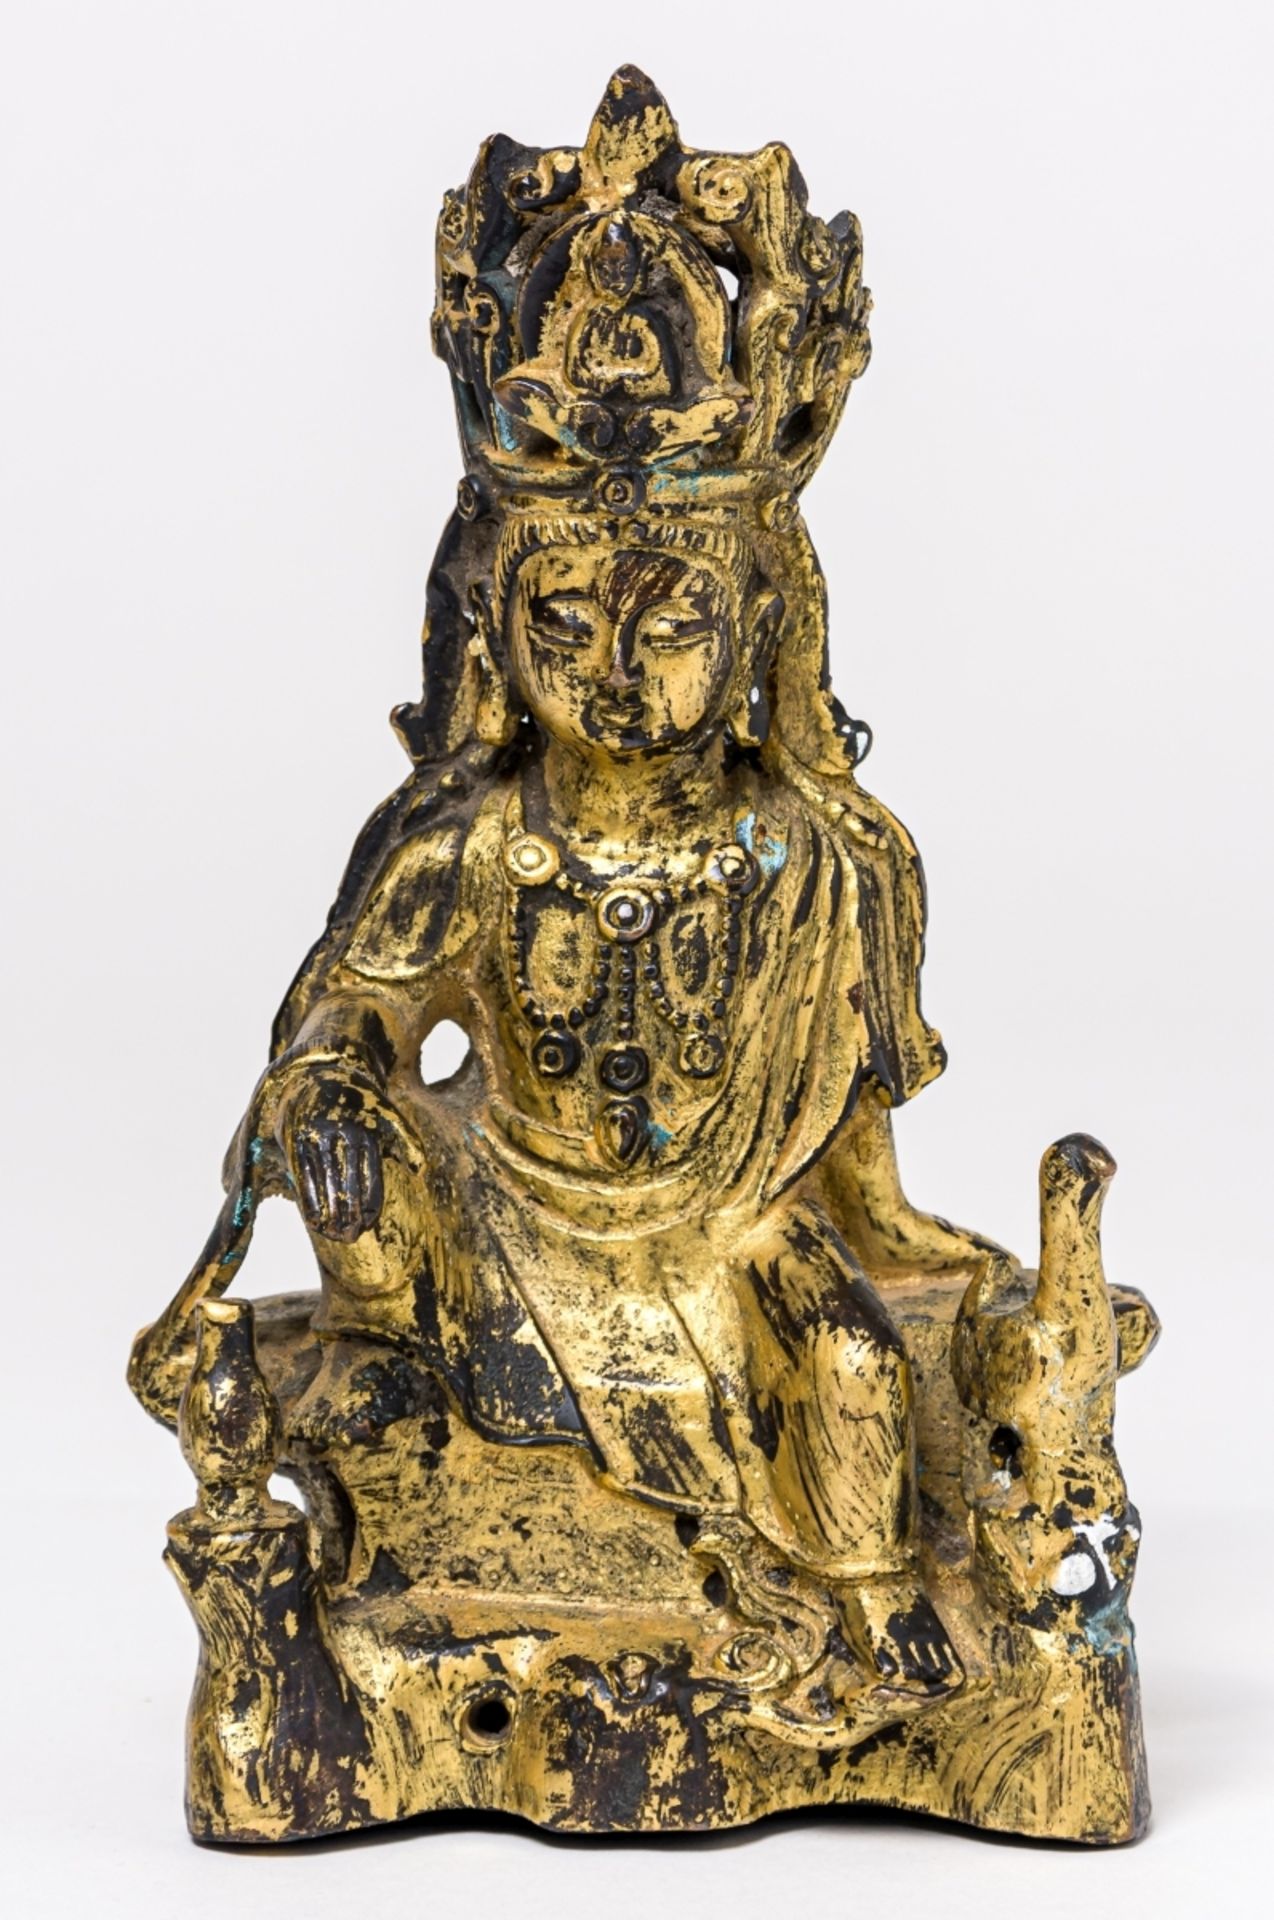 SEHR SELTENER BUDDHA MIT VOGEL UND VASEChina, Bronze, feuervergoldet, wohl 17. Jh. oder früher20 x